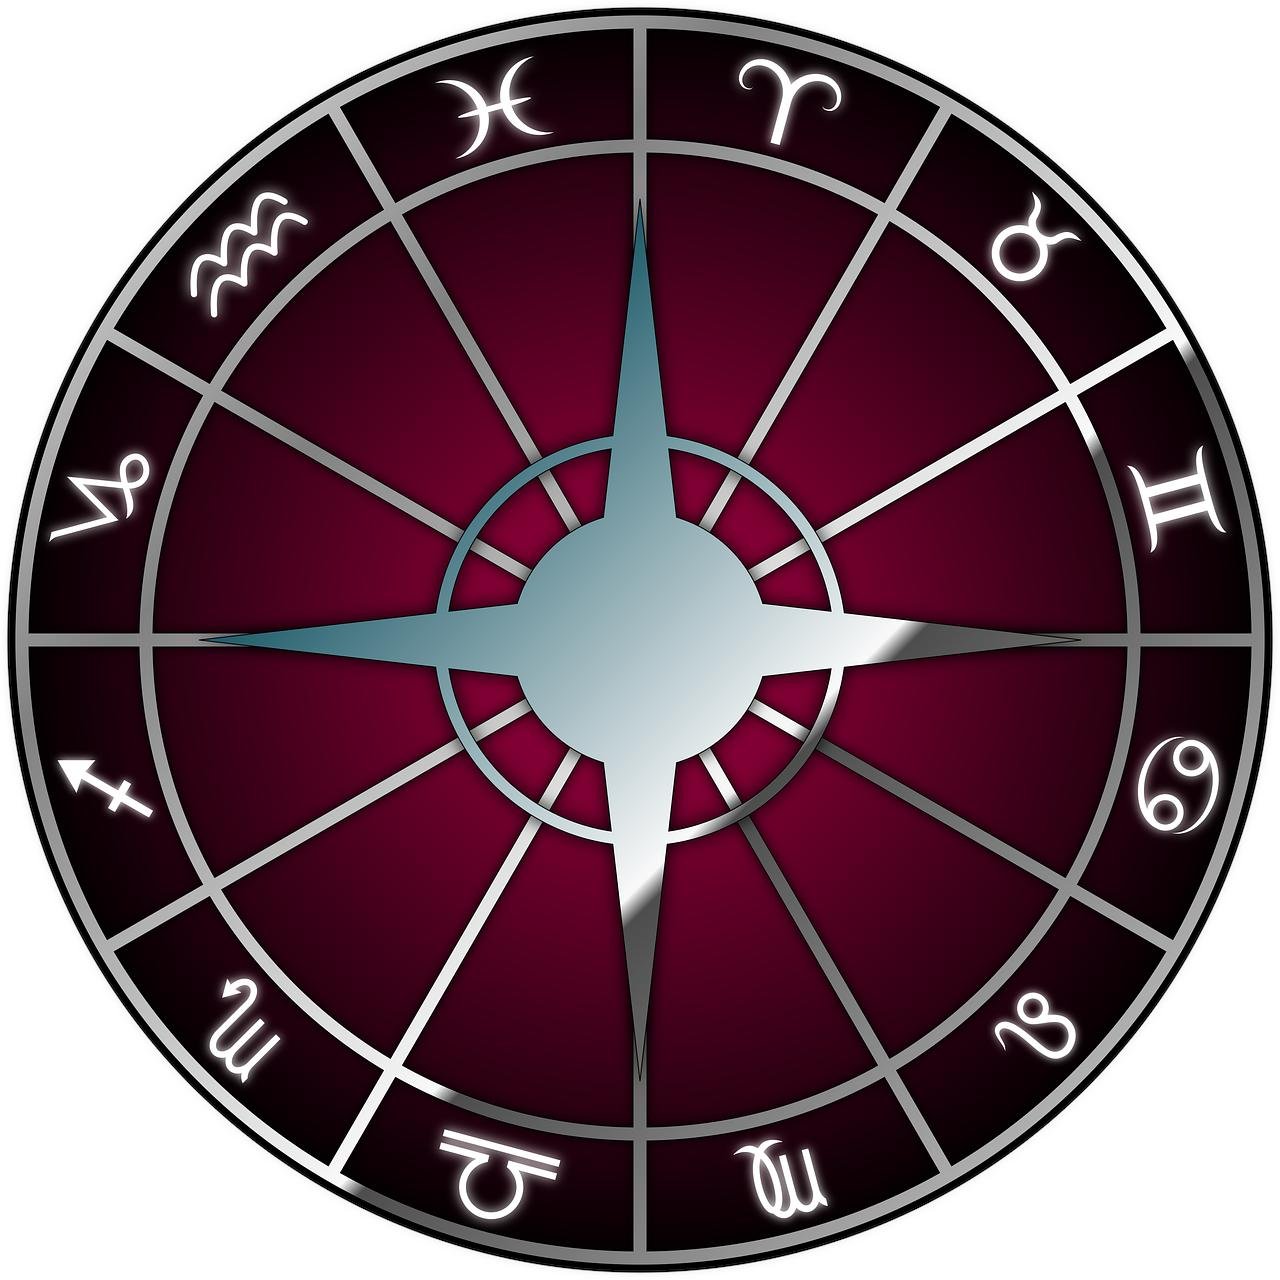 Horóscopo Semanal  Online - Saiba tudo o que precisa sobre o seu Signo do Zodiaco e horóscopos para a semana que vem. #horoscoposemanalonline